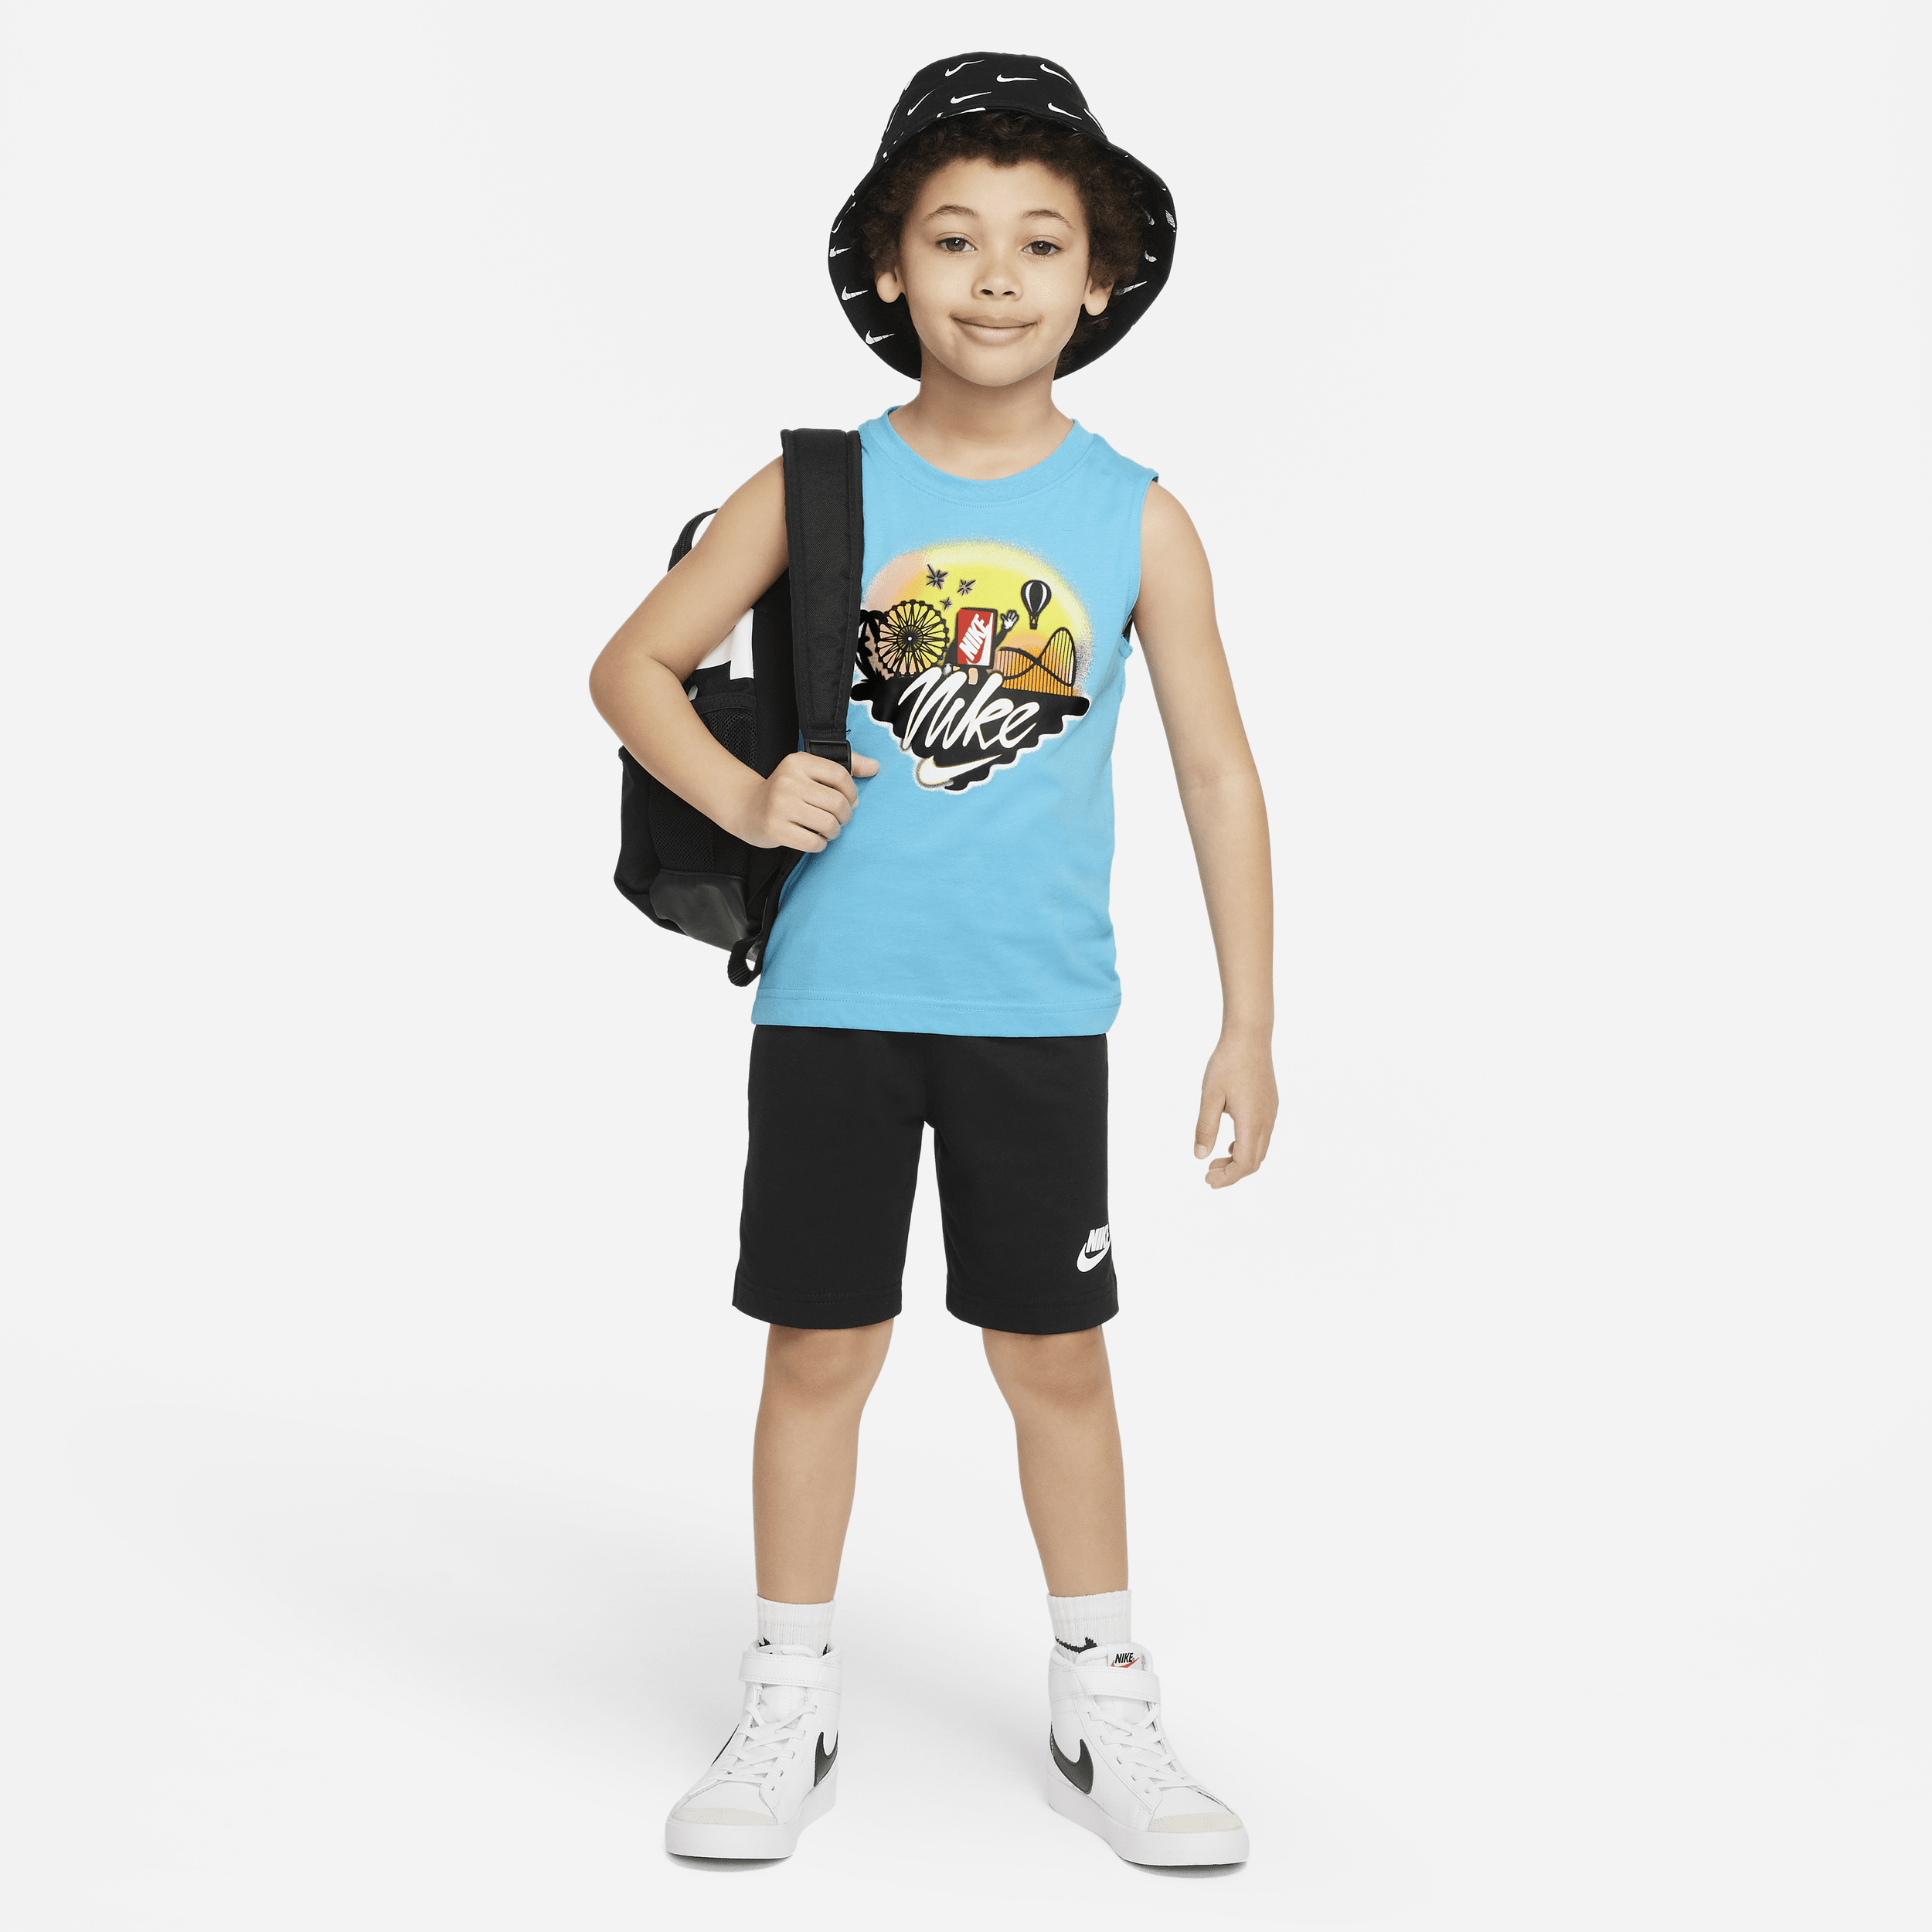 Todelt Nike Sportswear-muskelsæt med T-shirt og shorts til mindre børn - sort